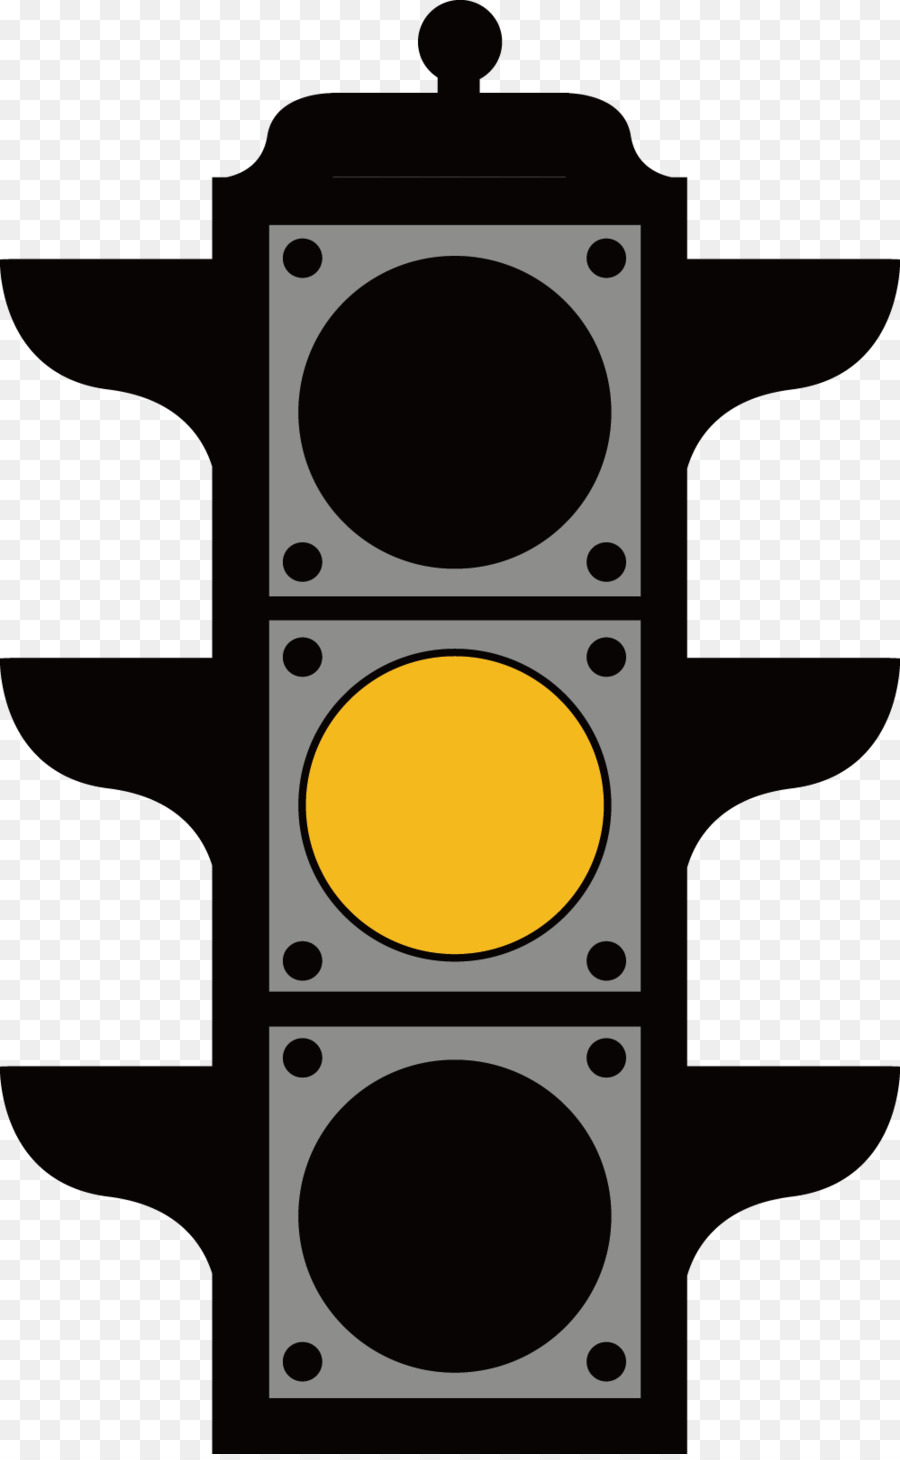 Traffico Lampada della luce - Accesi giallo semaforo